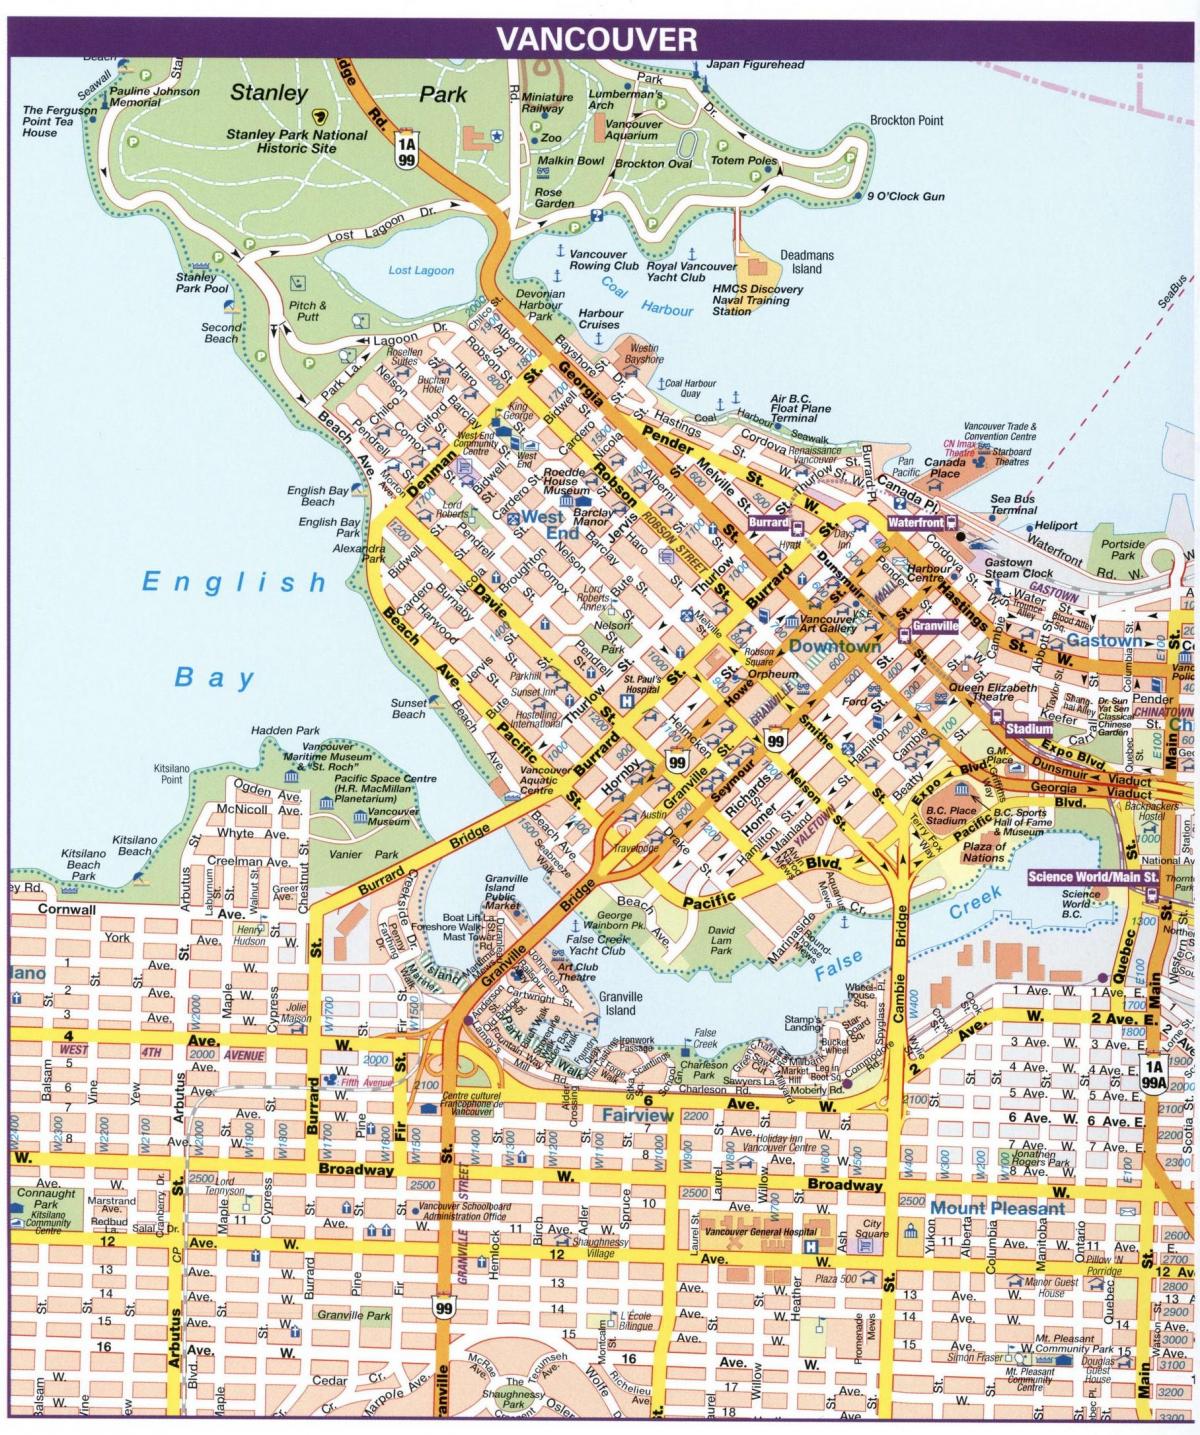 Plan des rues de Vancouver